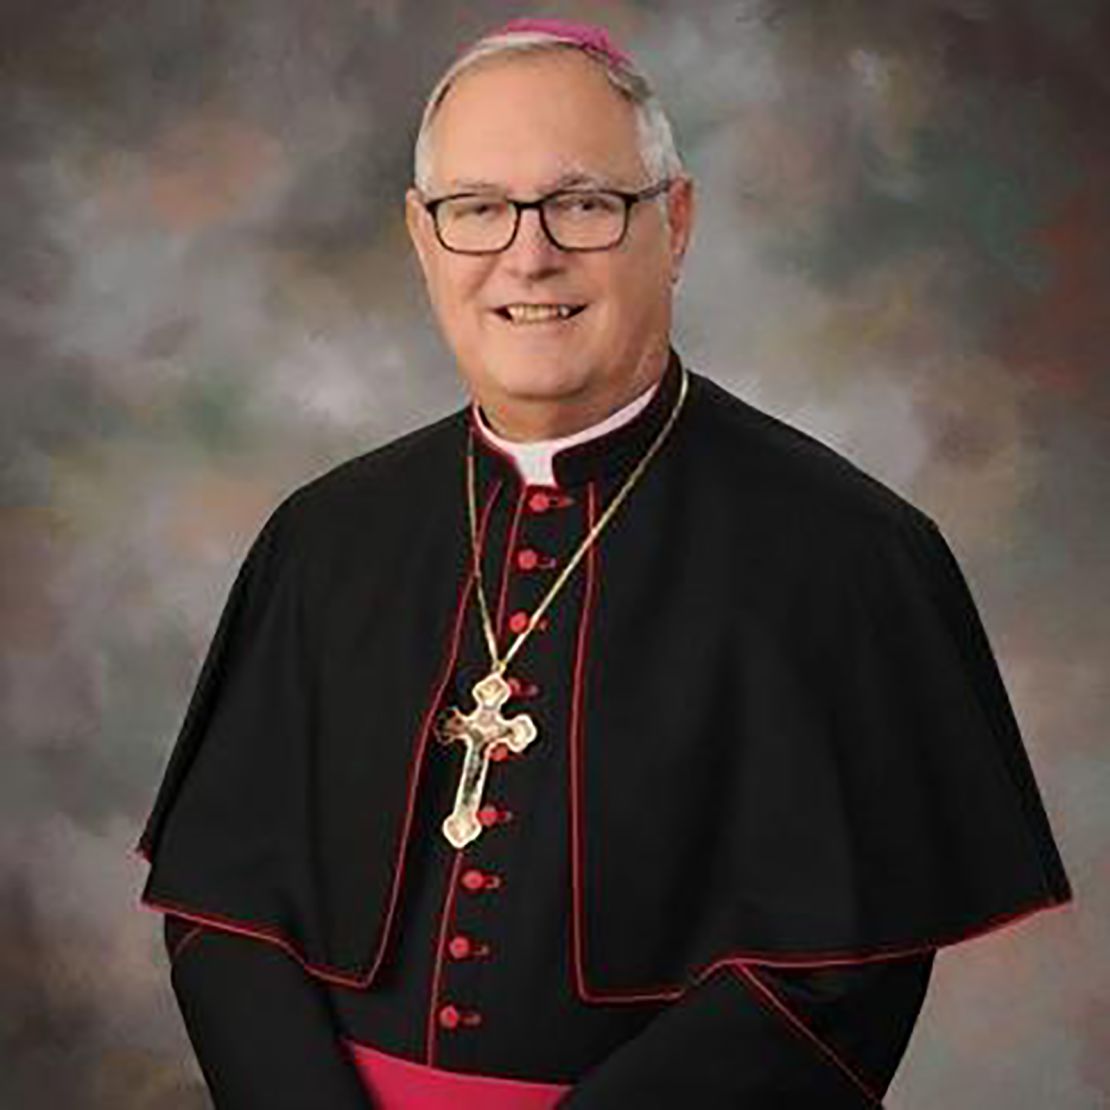  Bishop Thomas J. Tobin